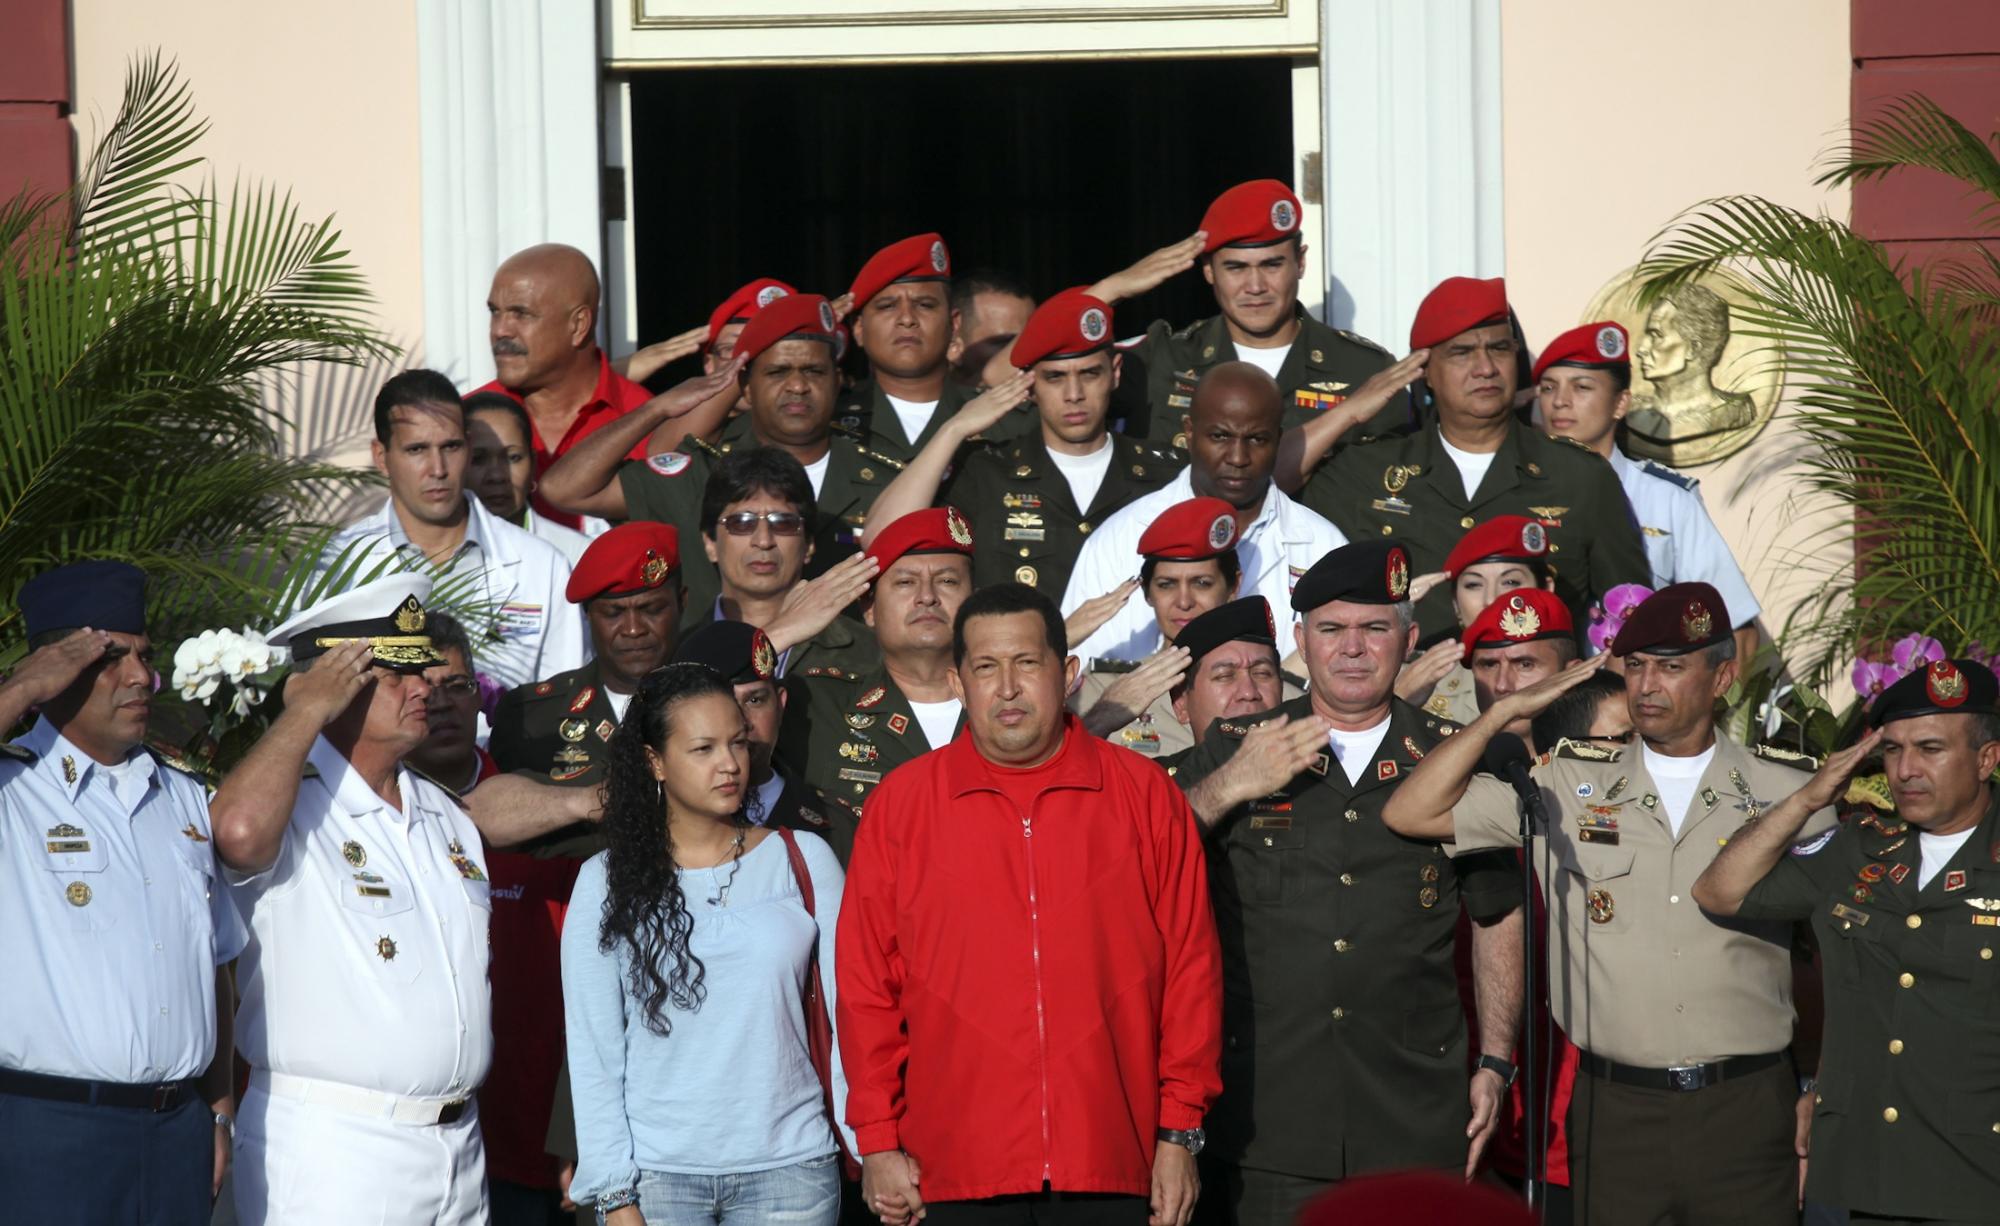 查韦斯“部分放权”赴古巴化疗 反对派领袖自称受打压